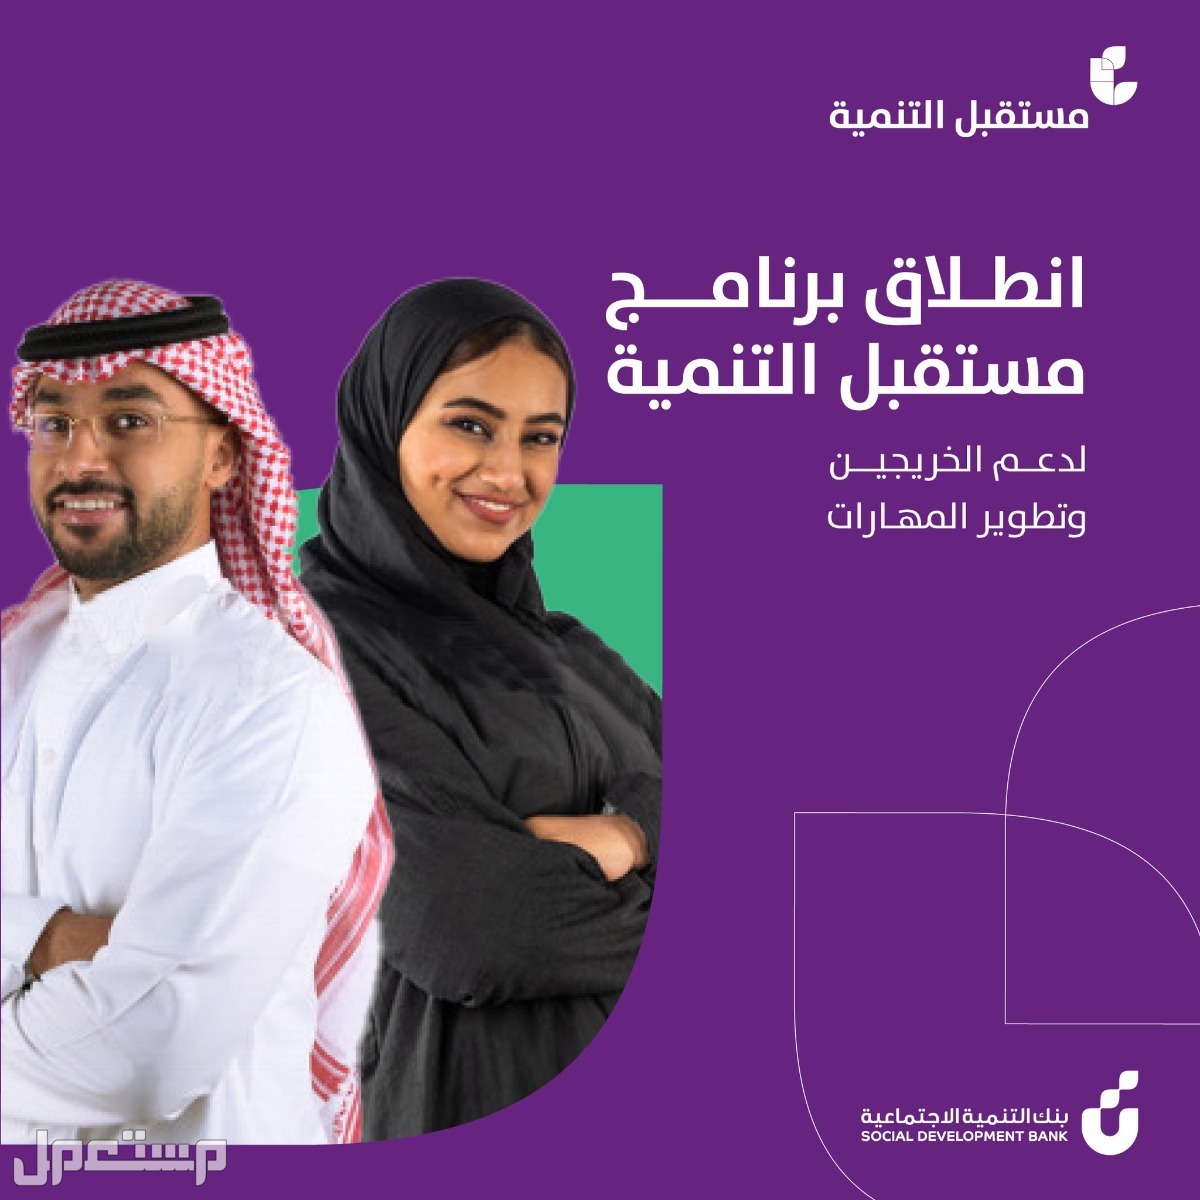 كيفية التقديم على برنامج مستقبل التنمية للخريجين في بنك التنمية الاجتماعية في البحرين التقديم على برنامج مستقبل التنمية للخريجين